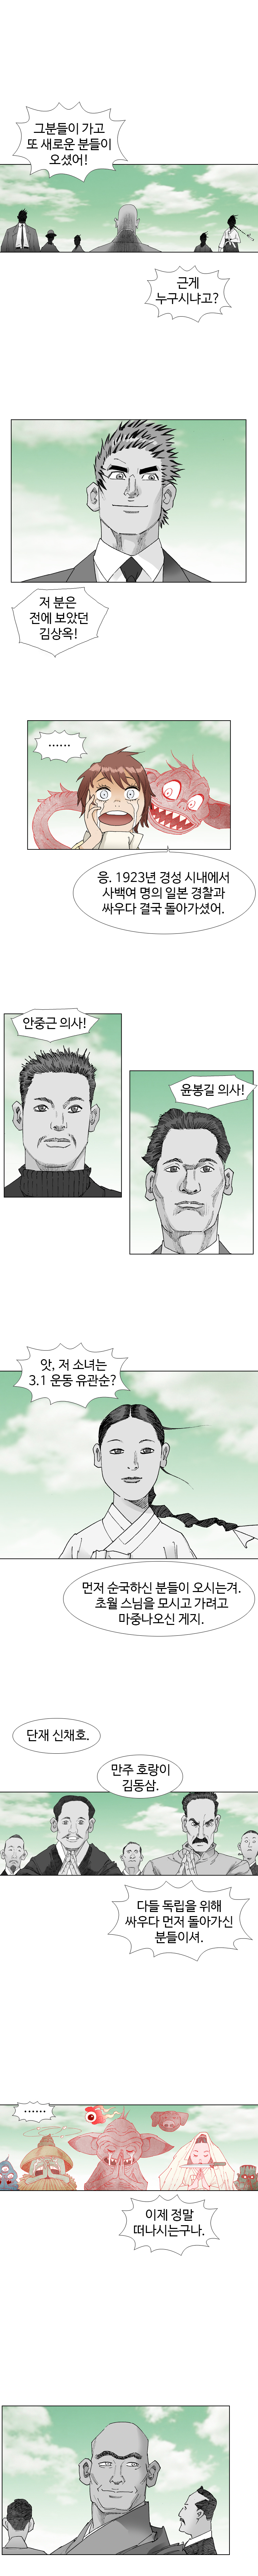 웹툰 백초월 5화-9